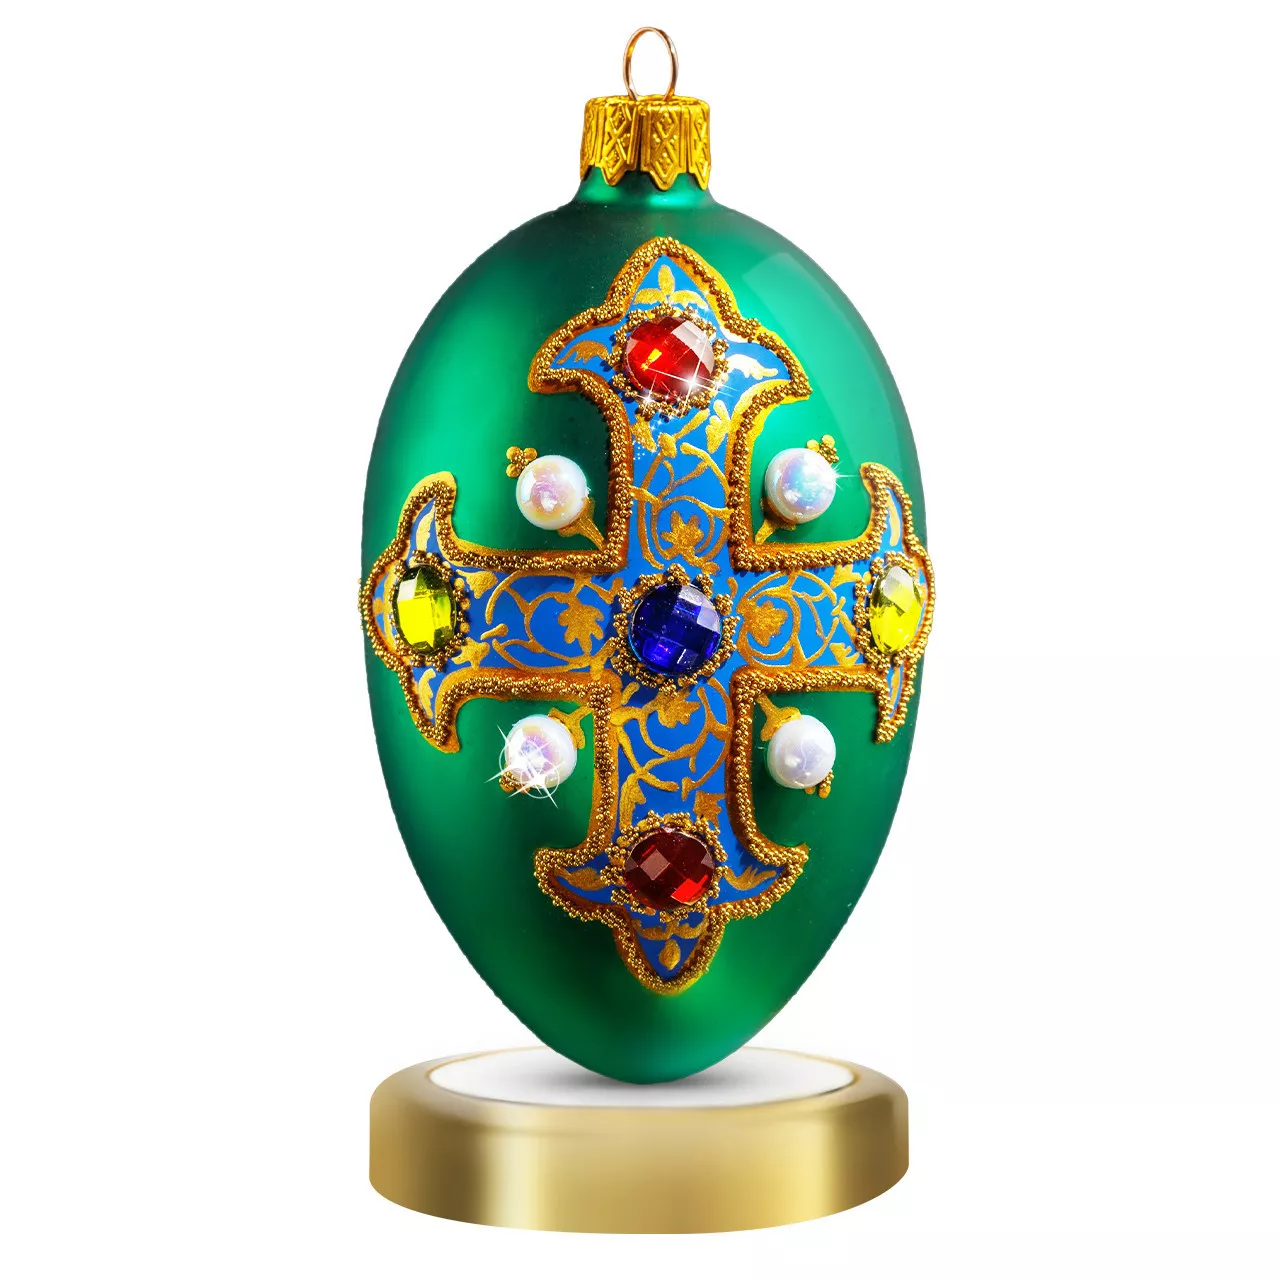 Игрушка новогодняя Crystal Christmas Royal Emblem Green, размер 12х6 см (CRE004) - Фото nav 1